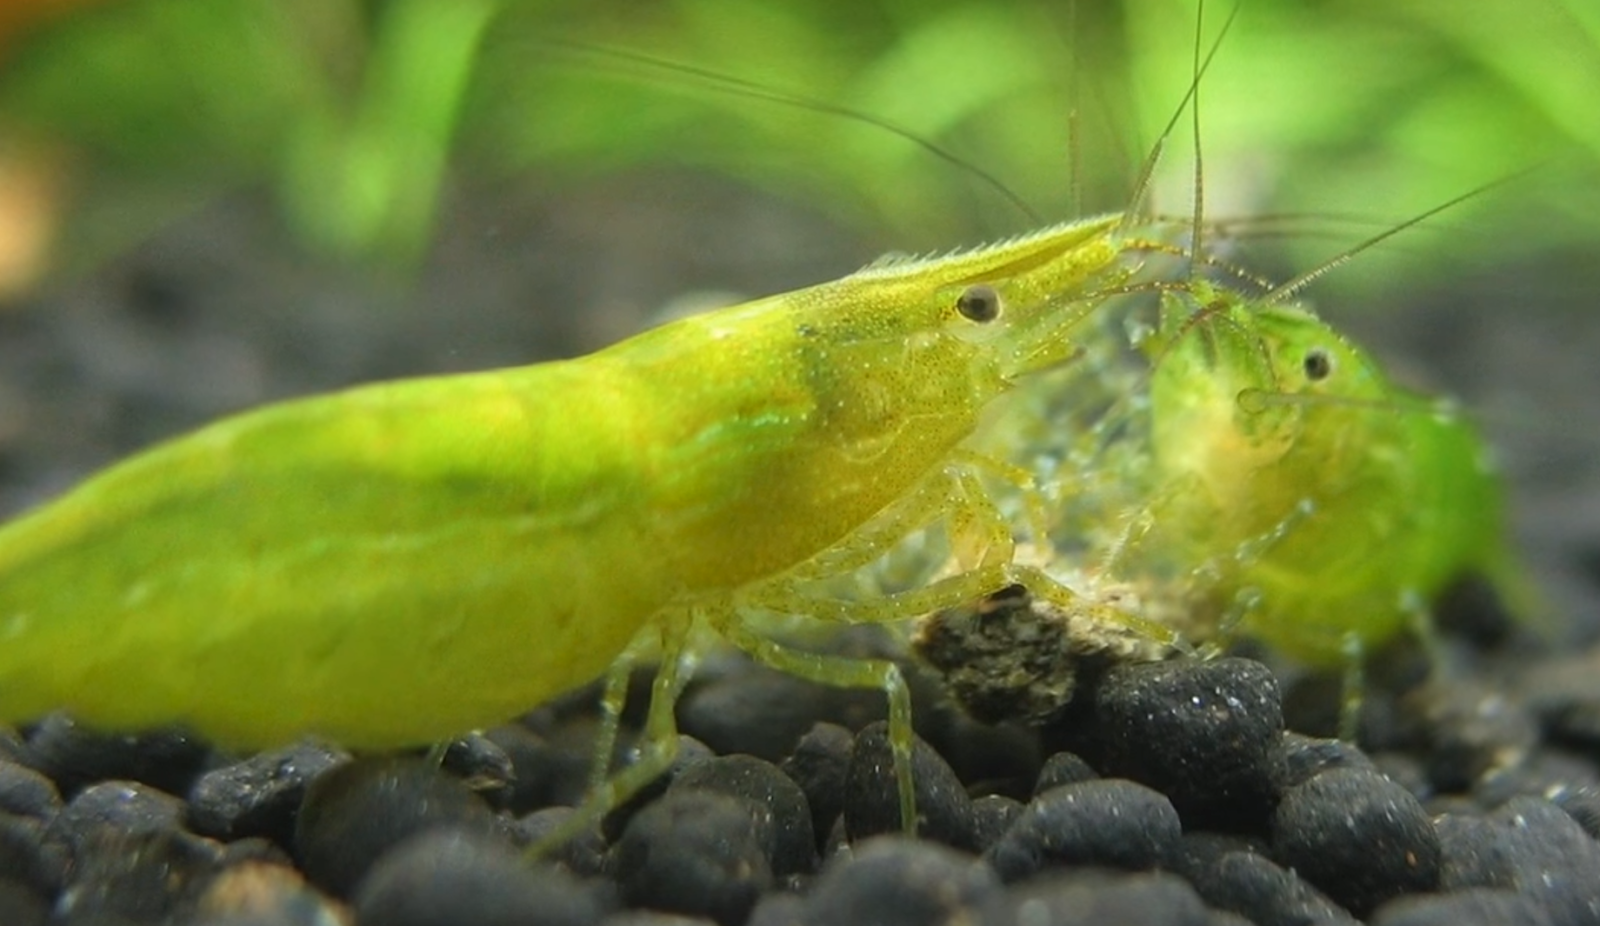 Green shrimp on gravel